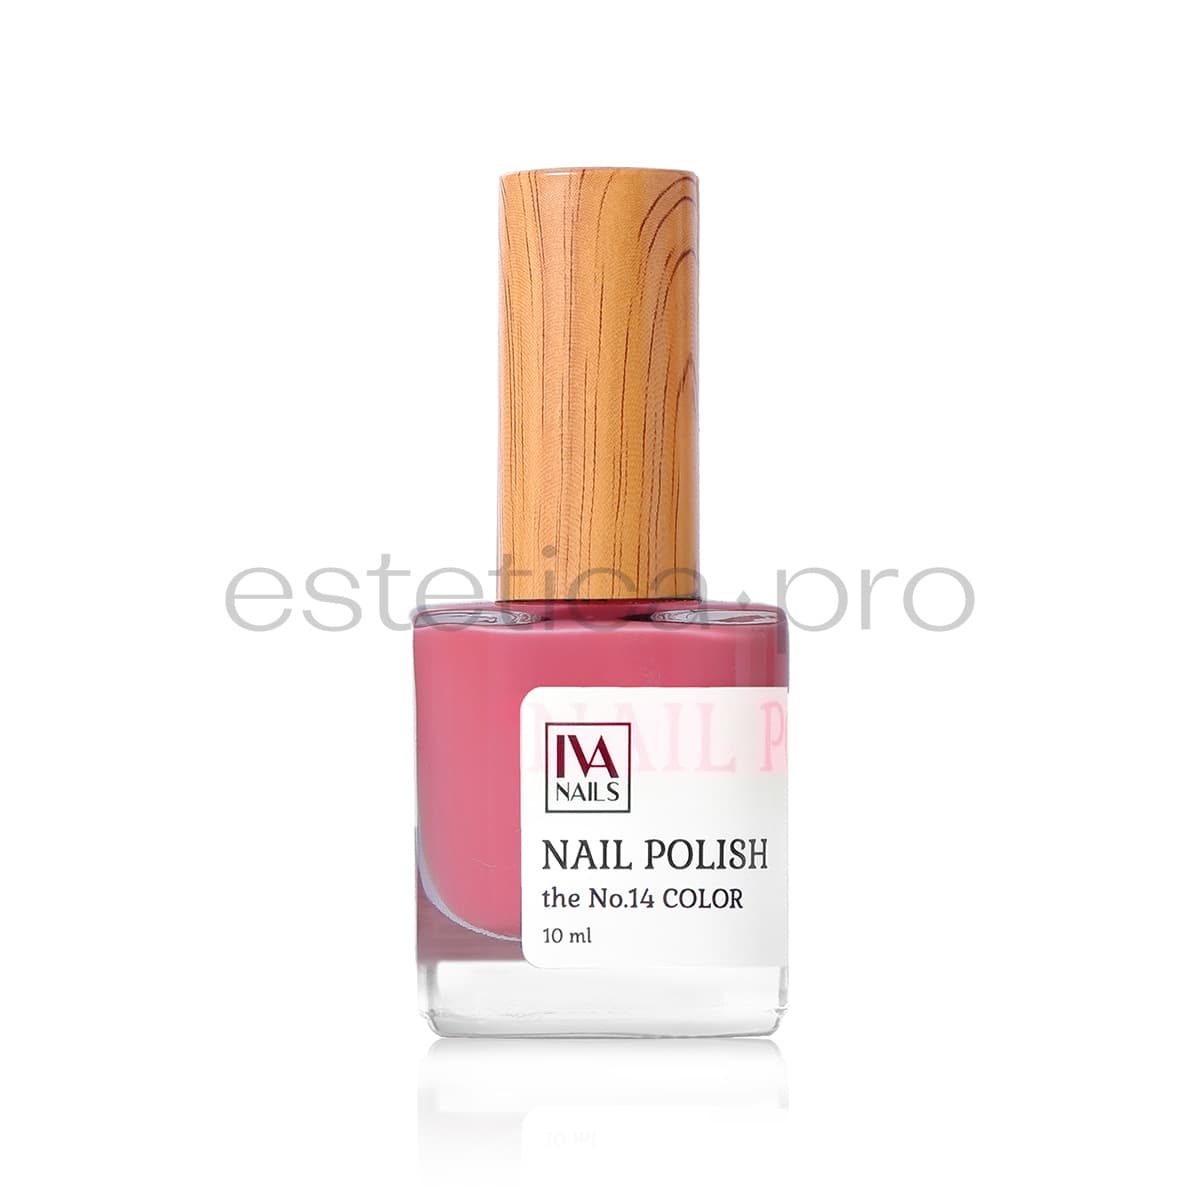 Лак для ногтей Iva Nails 14, 10мл.